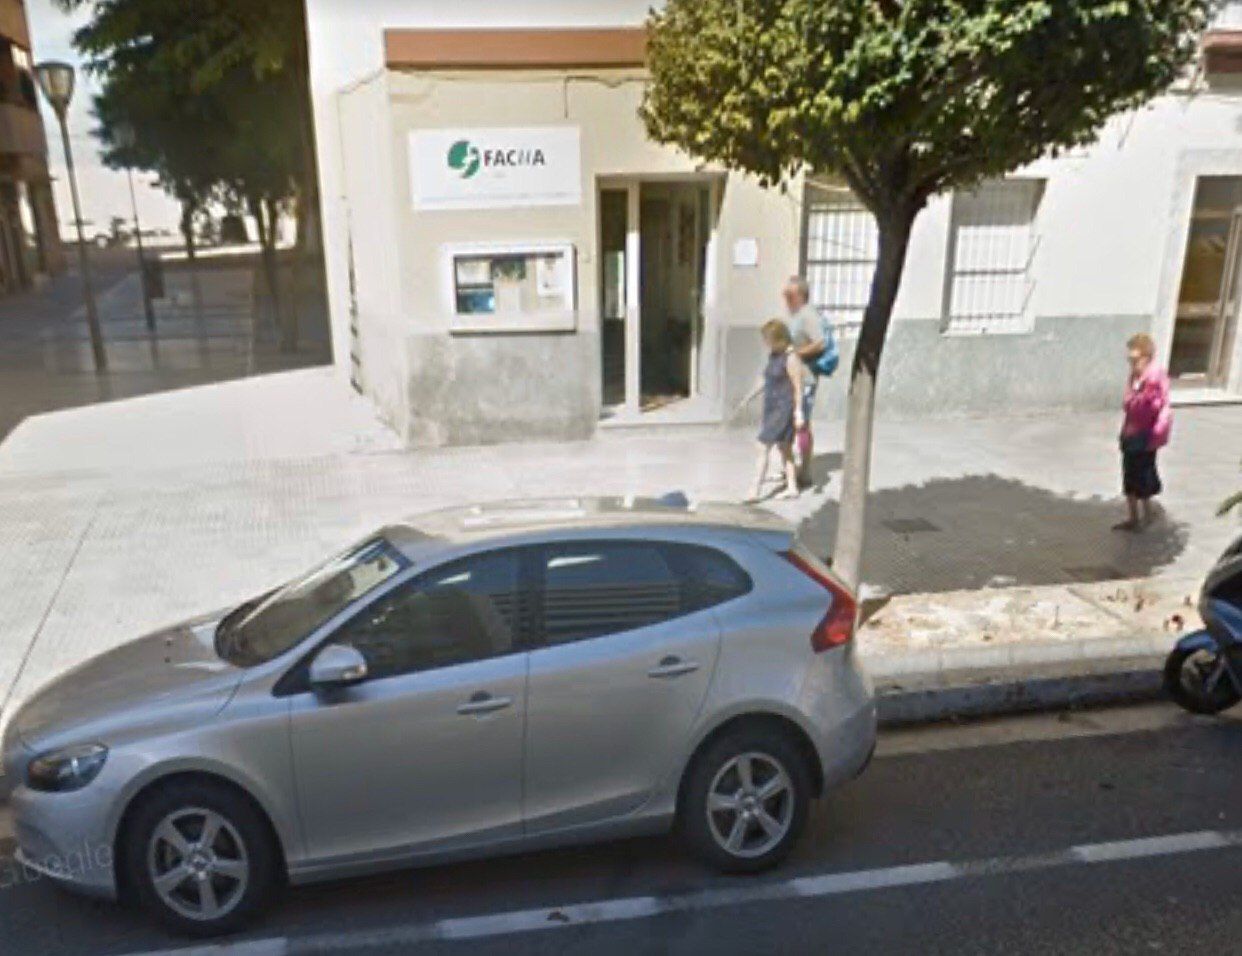 La sede de Facua Cádiz, en una imagen de Google Maps.